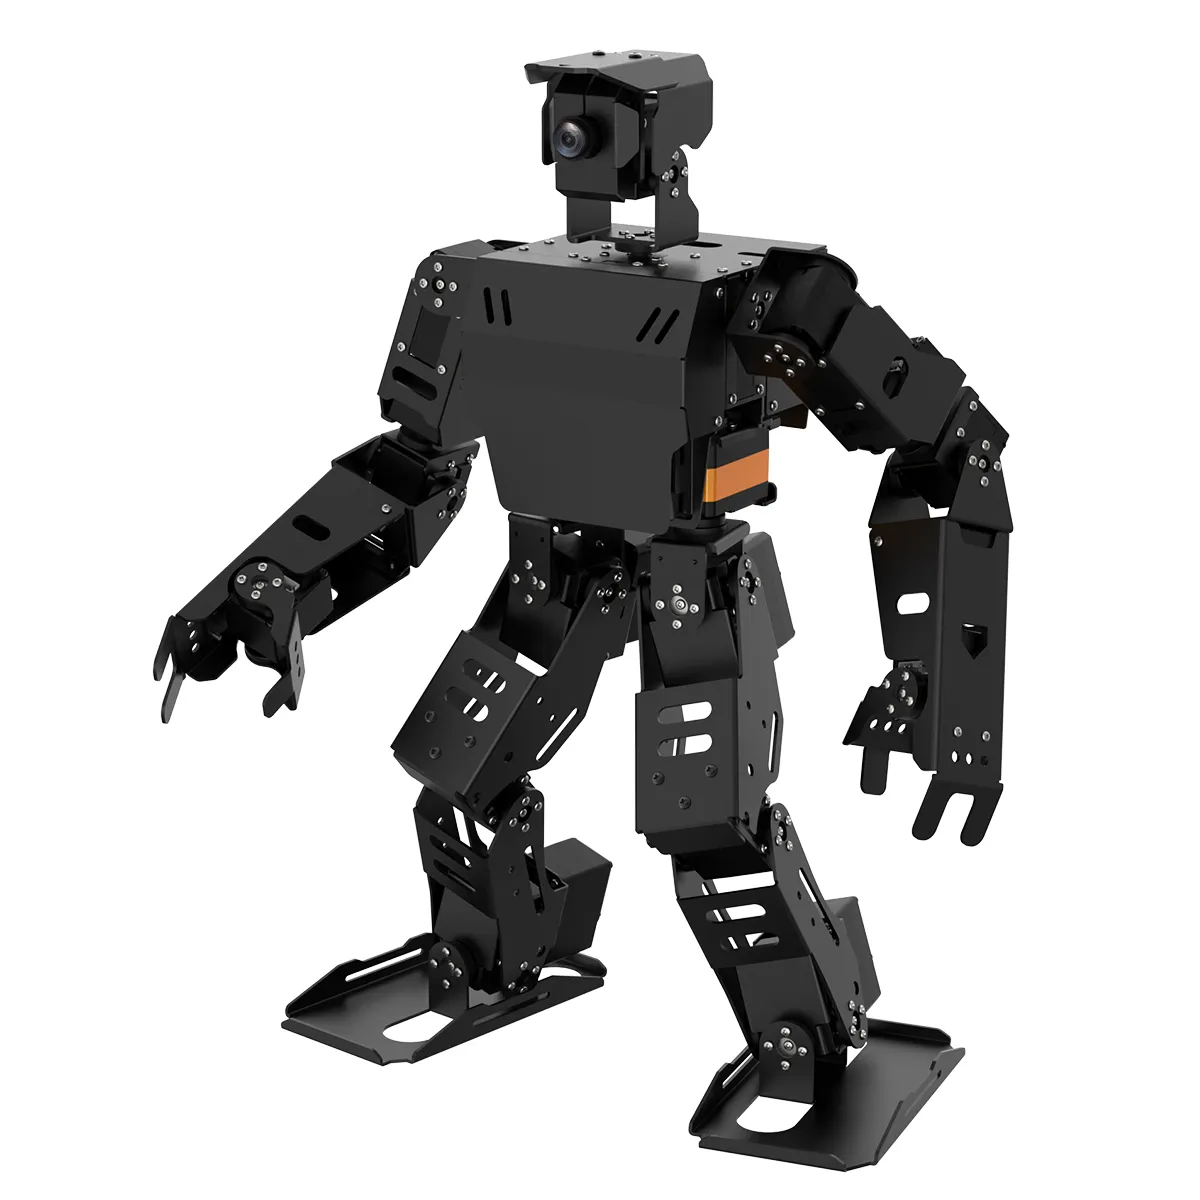 หุ่นยนต์มนุษย์ ROS สำหรับการแข่งขันชุดการสอนตามหุ่นยนต์ออกกำลังกาย